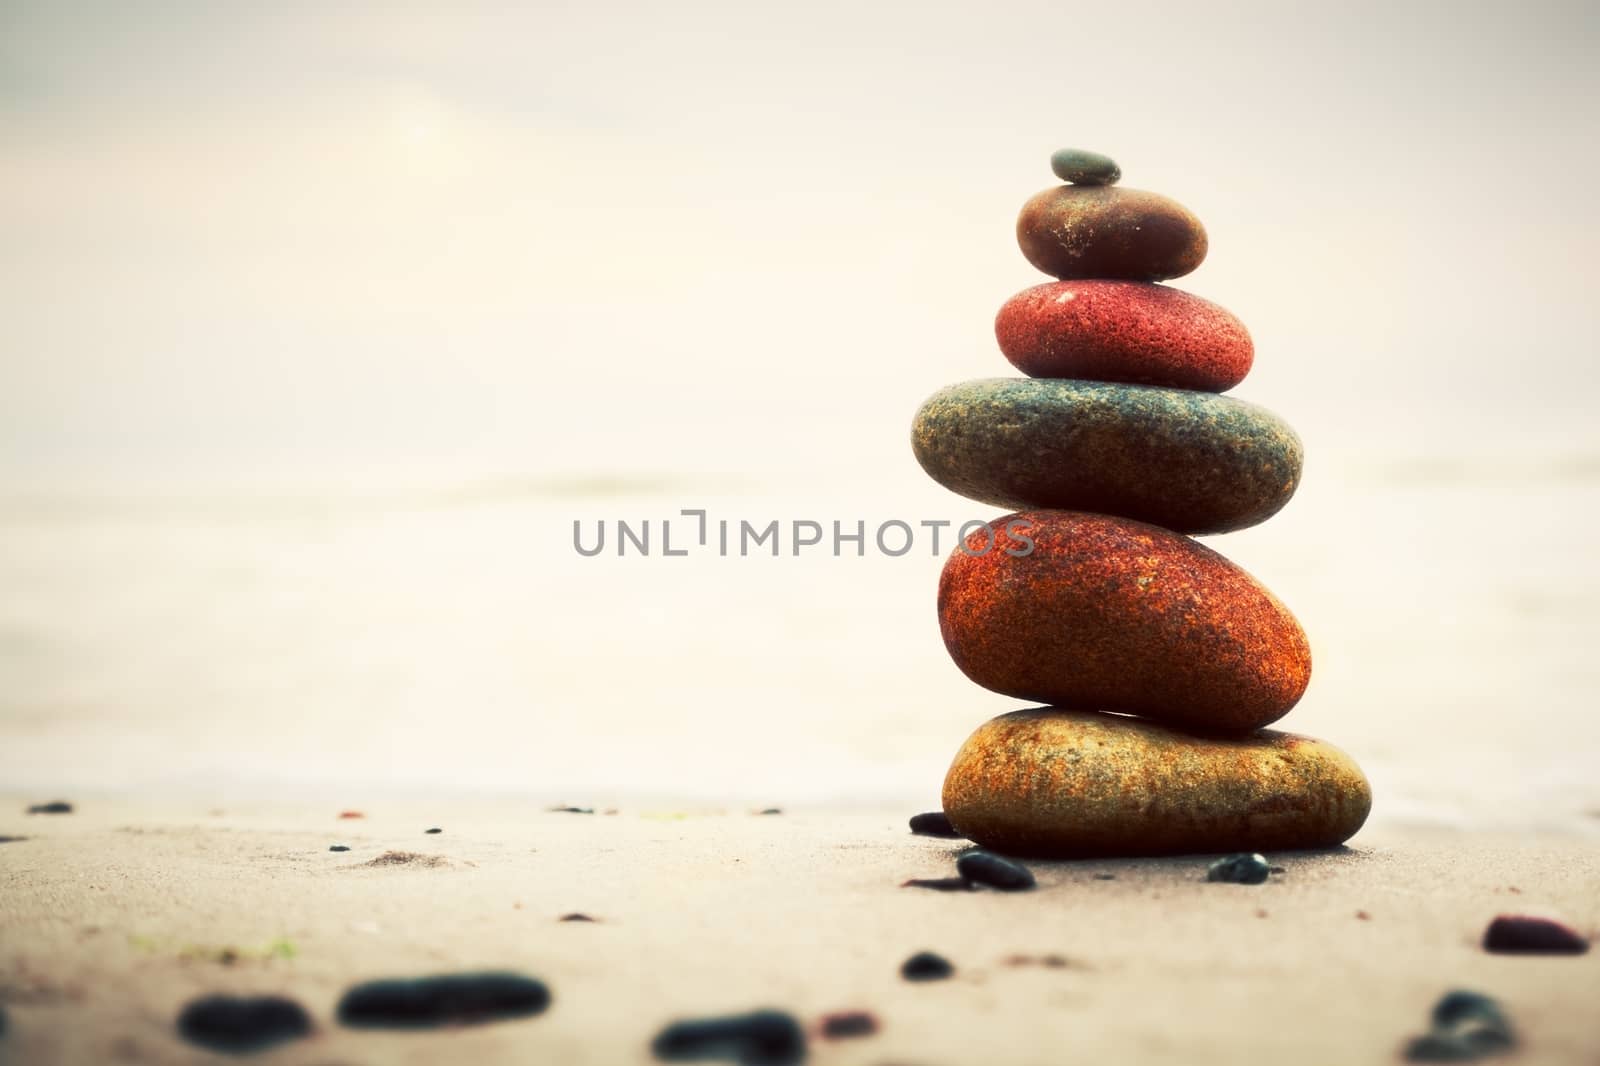 Stones pyramid on sand symbolizing zen, harmony, balance by photocreo